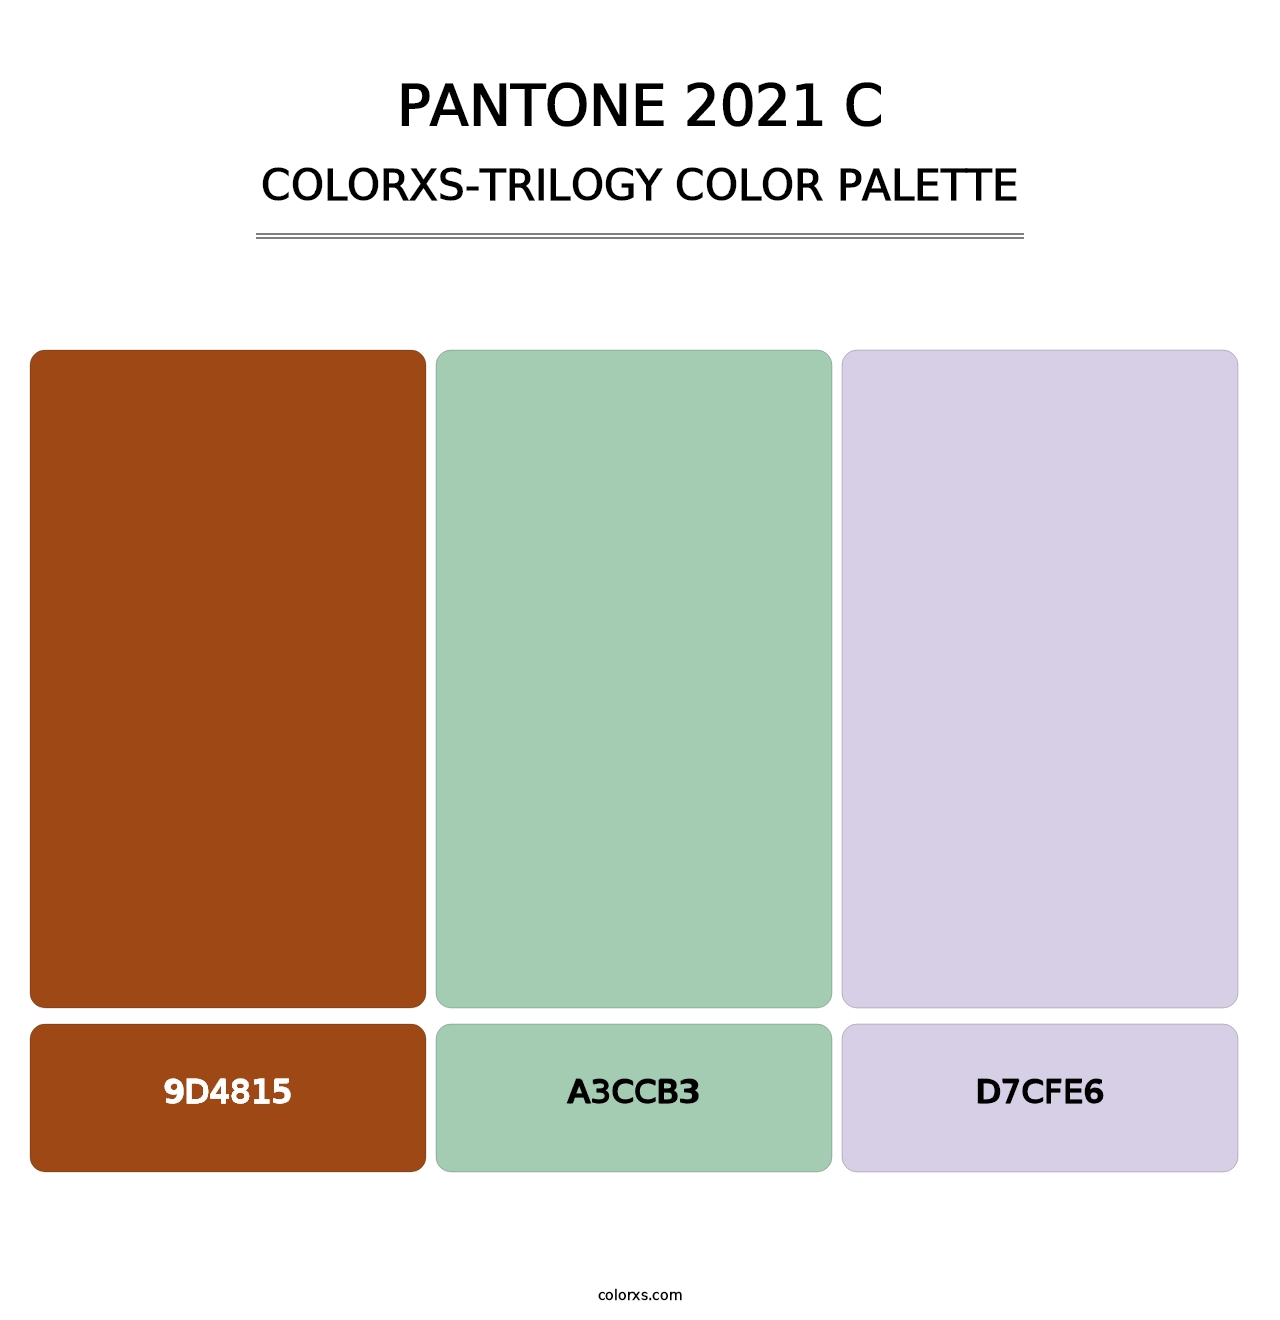 PANTONE 2021 C - Colorxs Trilogy Palette